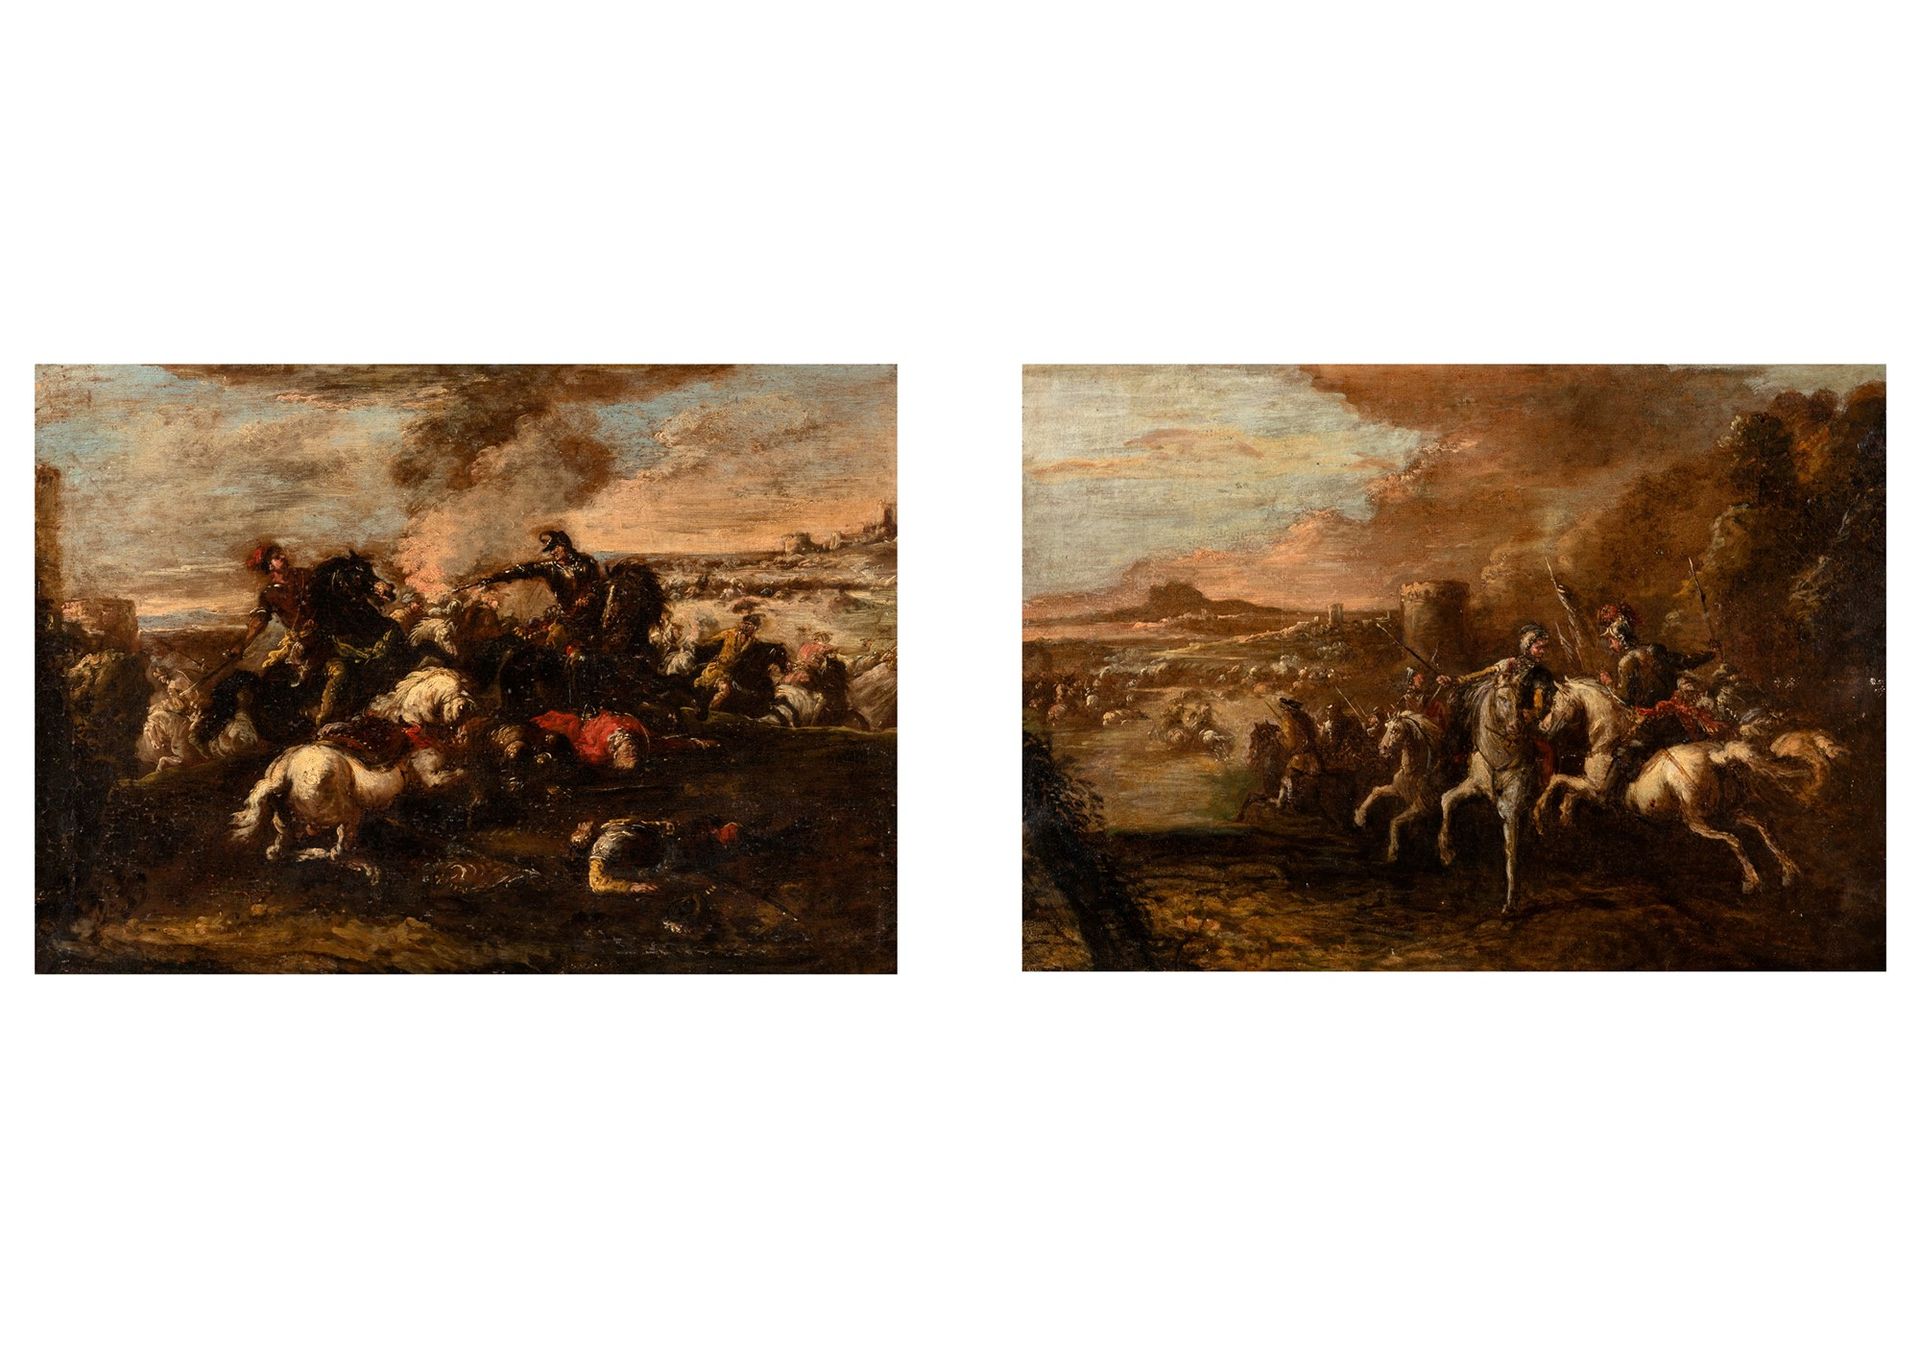 Scuola italiana, secolo XVII Two battle scenes

oil on canvas
40 x 55 cm (each)